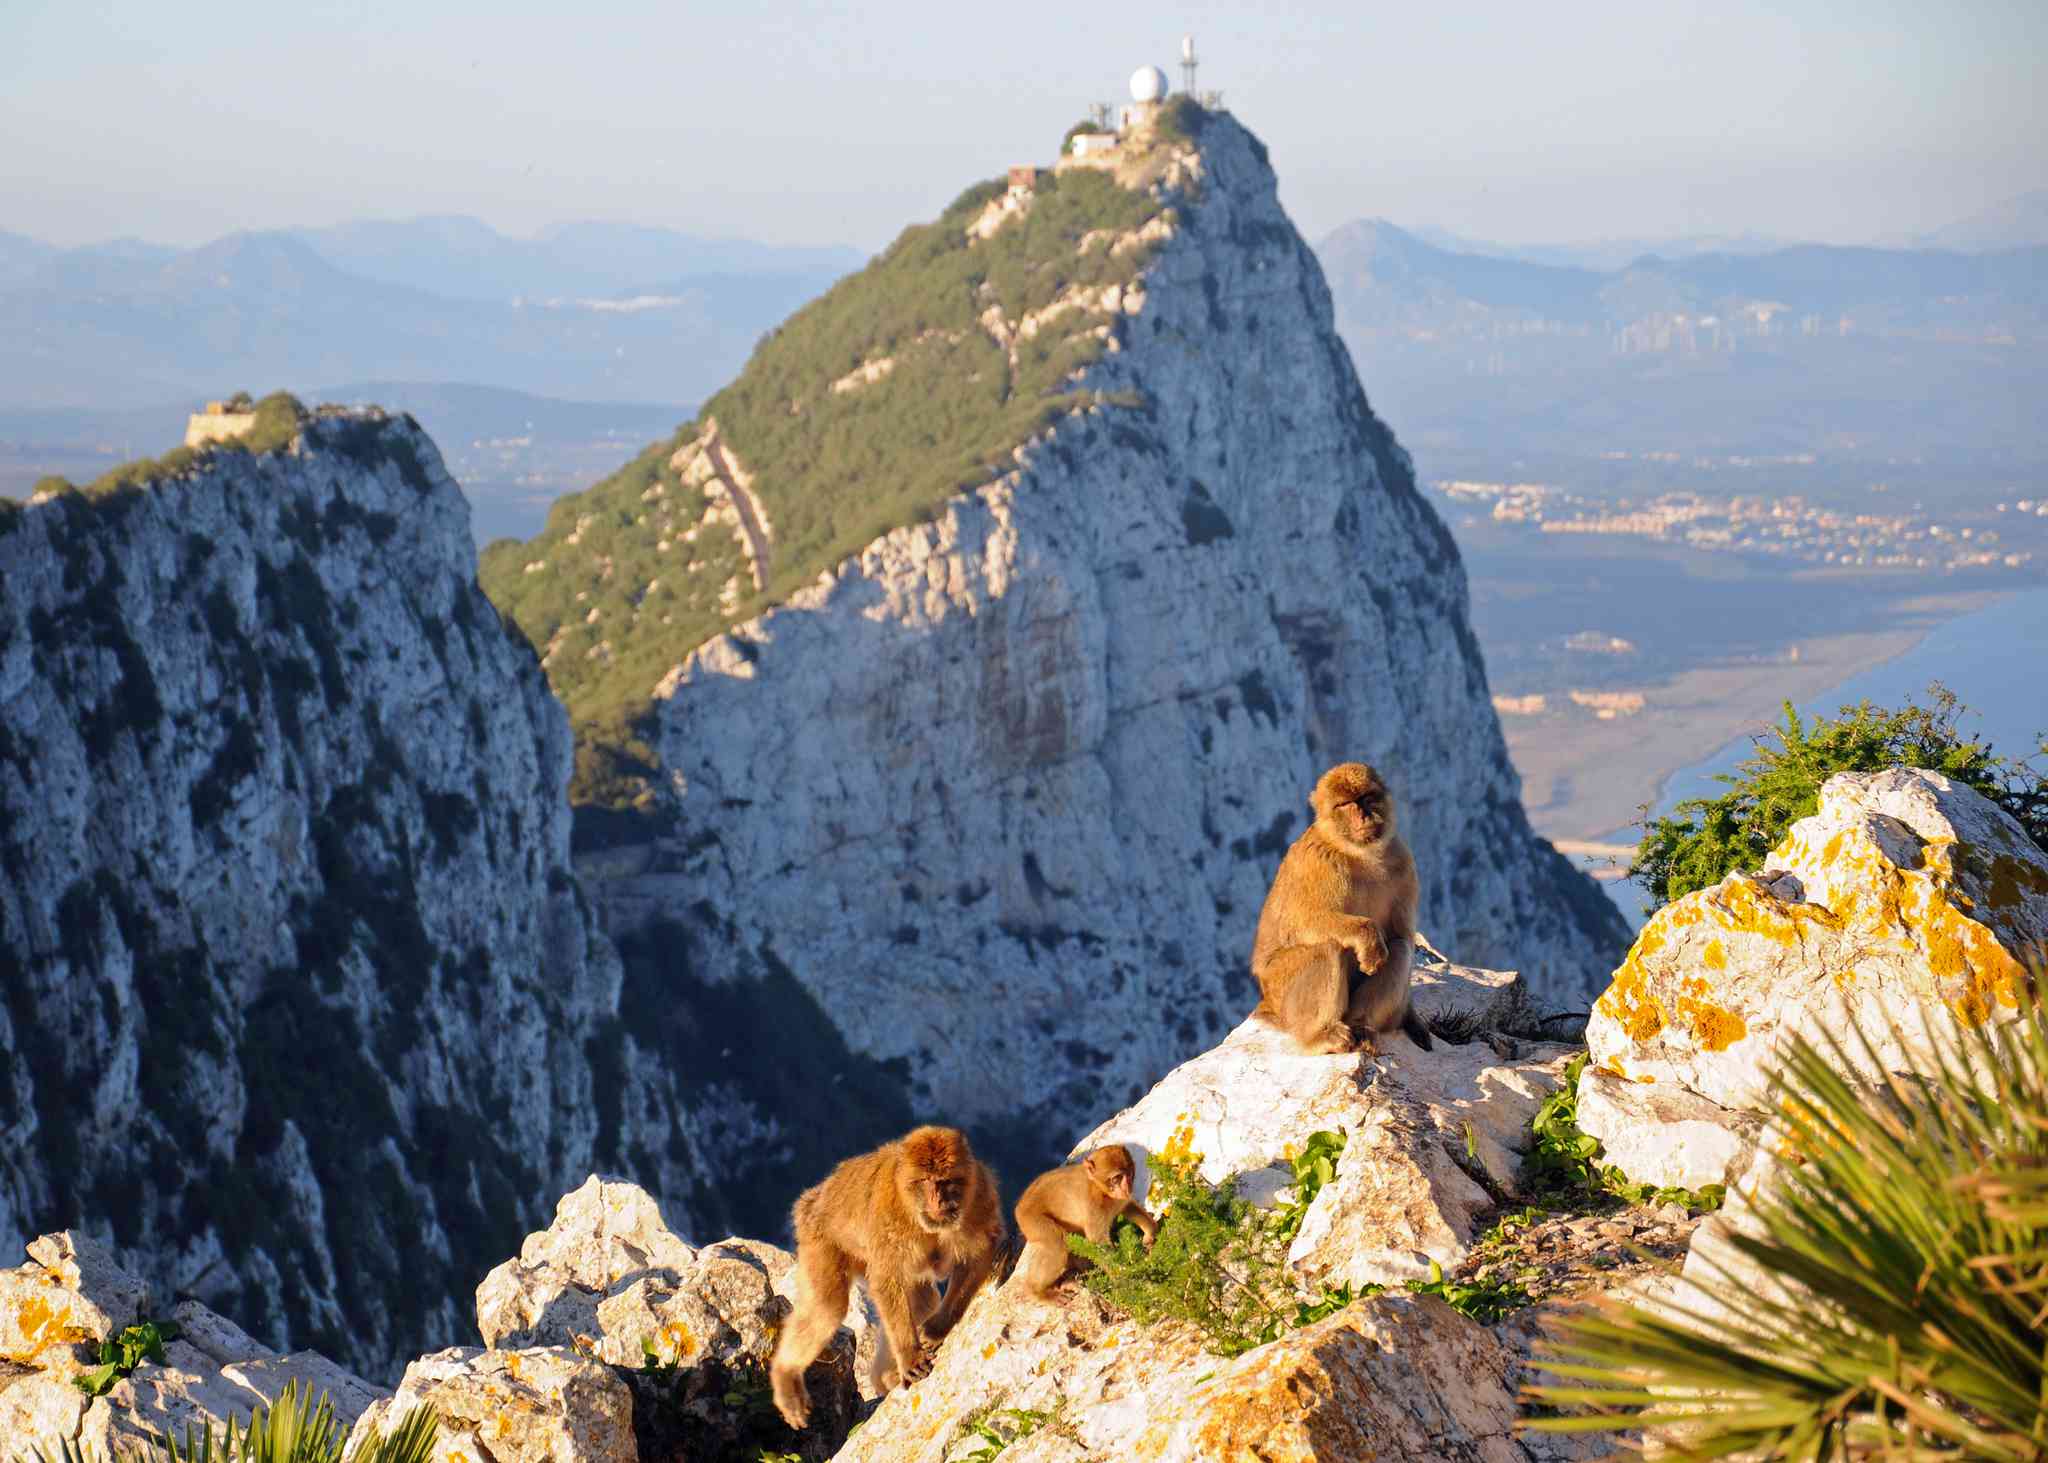 Una banda de monos sentada en una cumbre rocosa con un pico de montaña al fondo